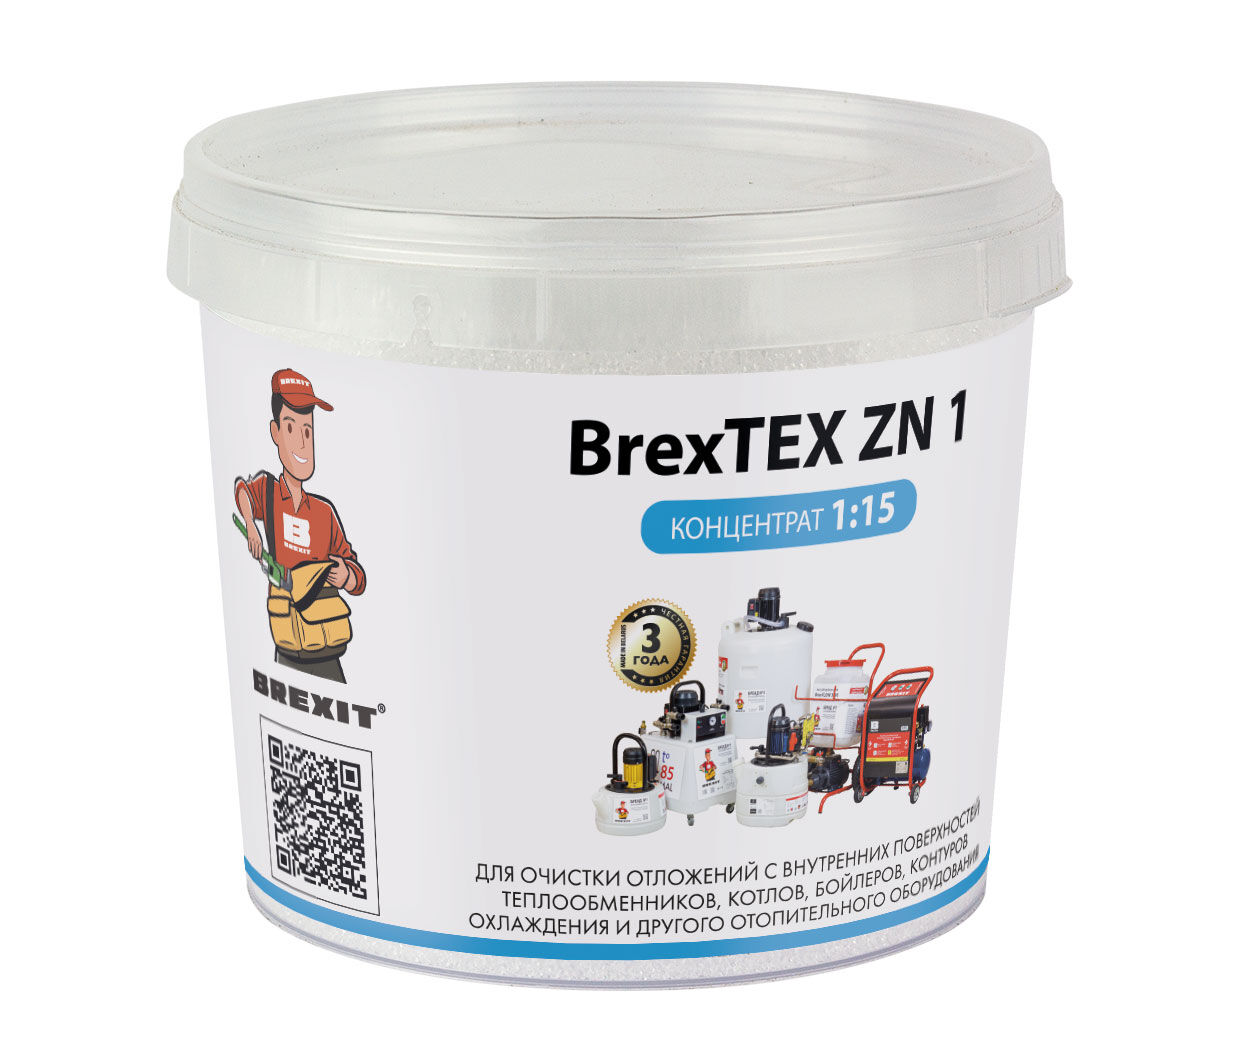 Порошковый реагент для промывки теплообменников BrexTEX ZN 1 brexit